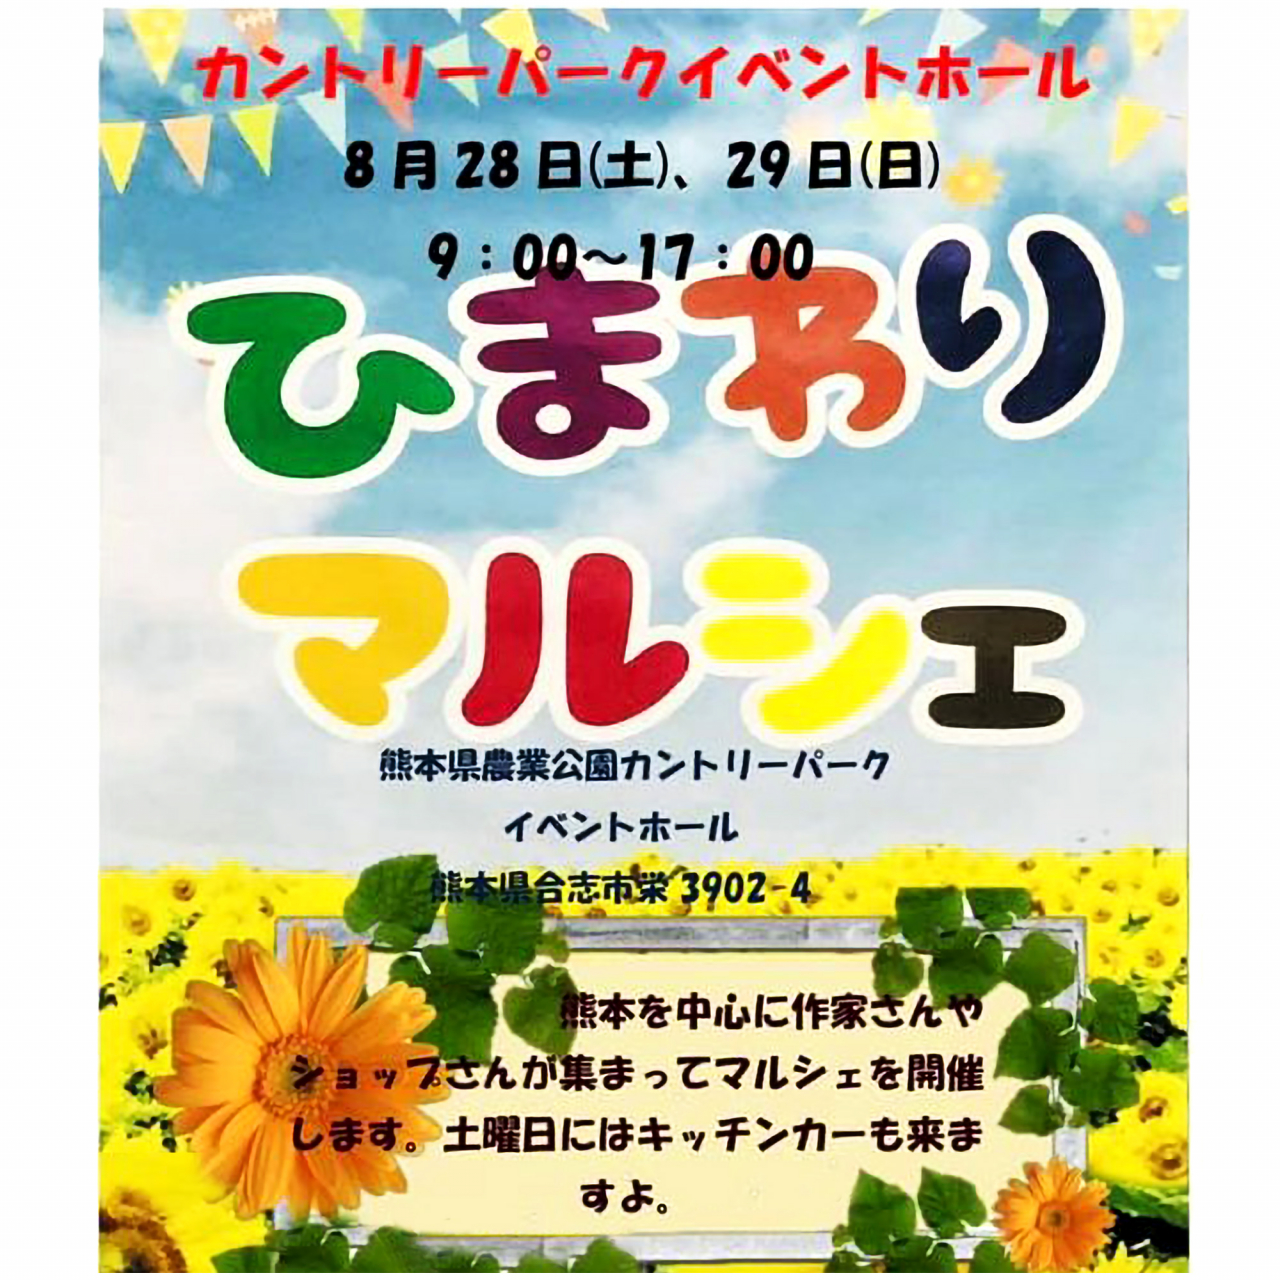 令和3年8月28日 土 29日 日 ひまわりマルシェ開催 イベント情報 Countrypark